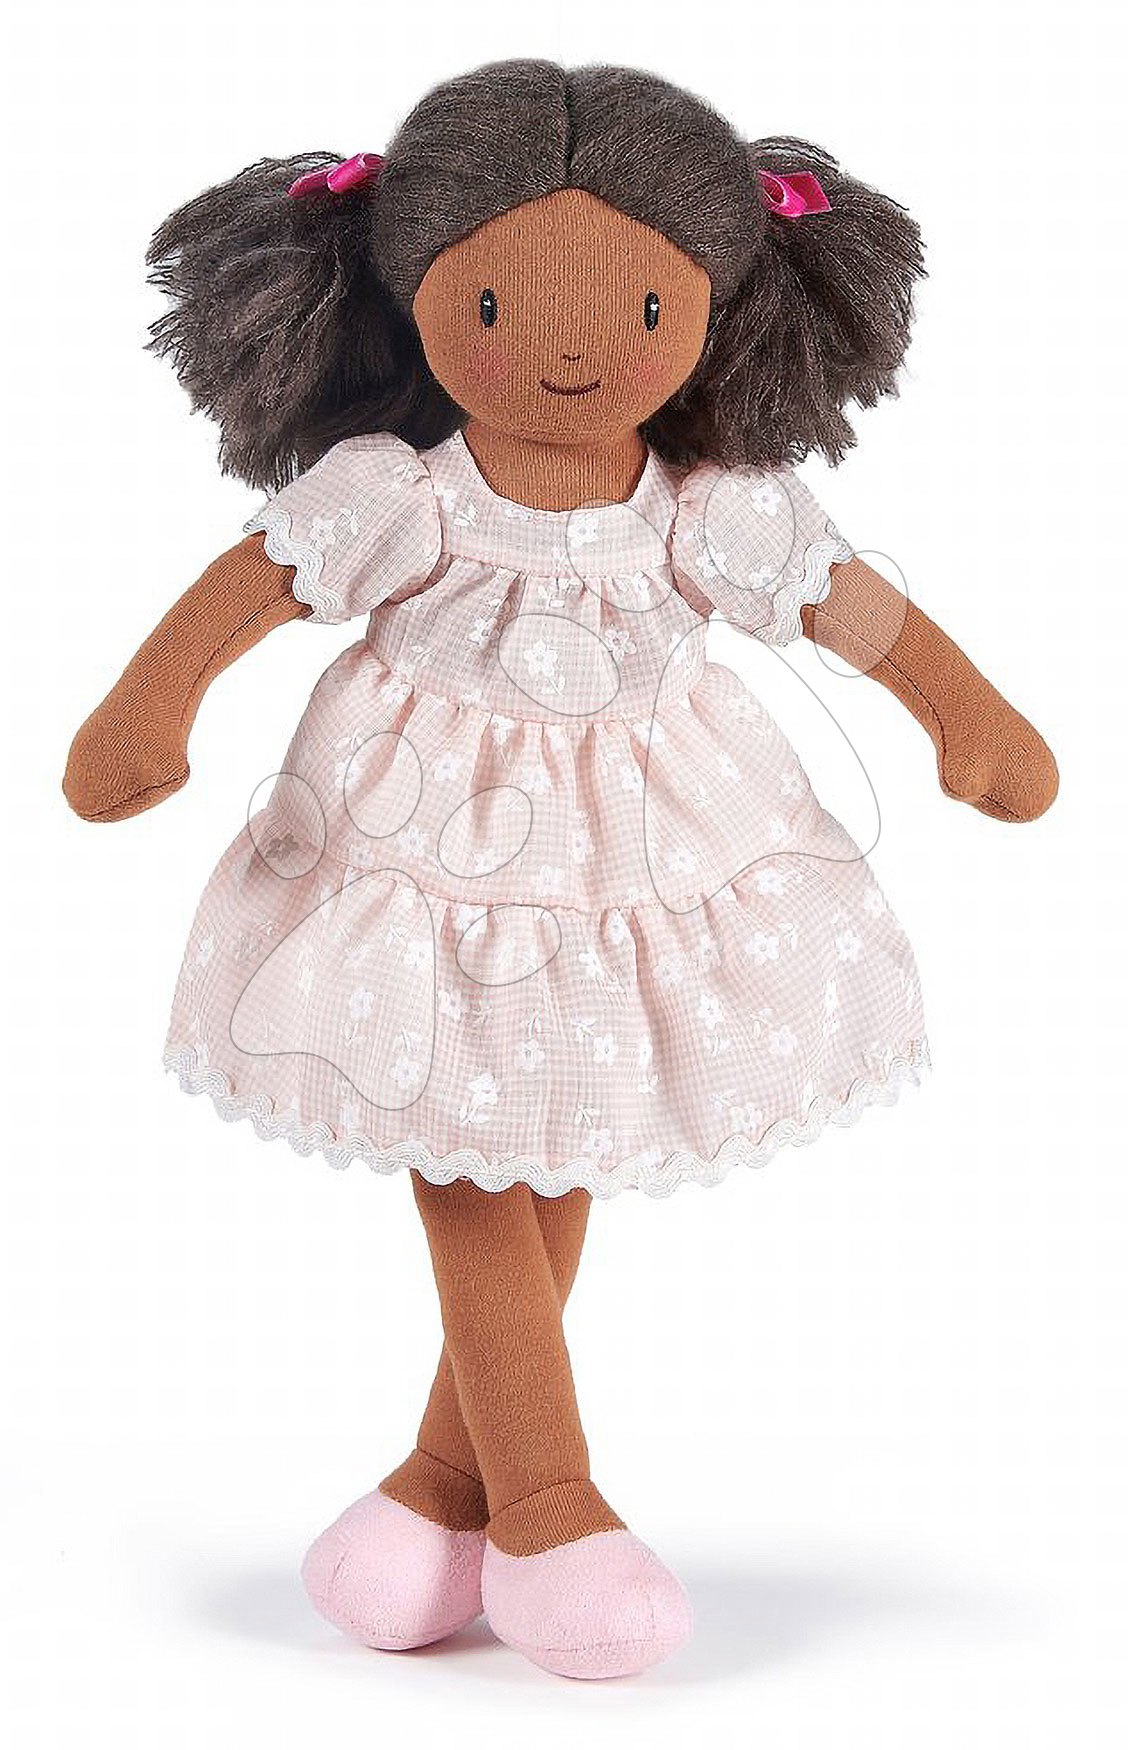 Bábika handrová Mia Rag Doll ThreadBear 35 cm z jemnej mäkkej bavlny s tmavými vláskami